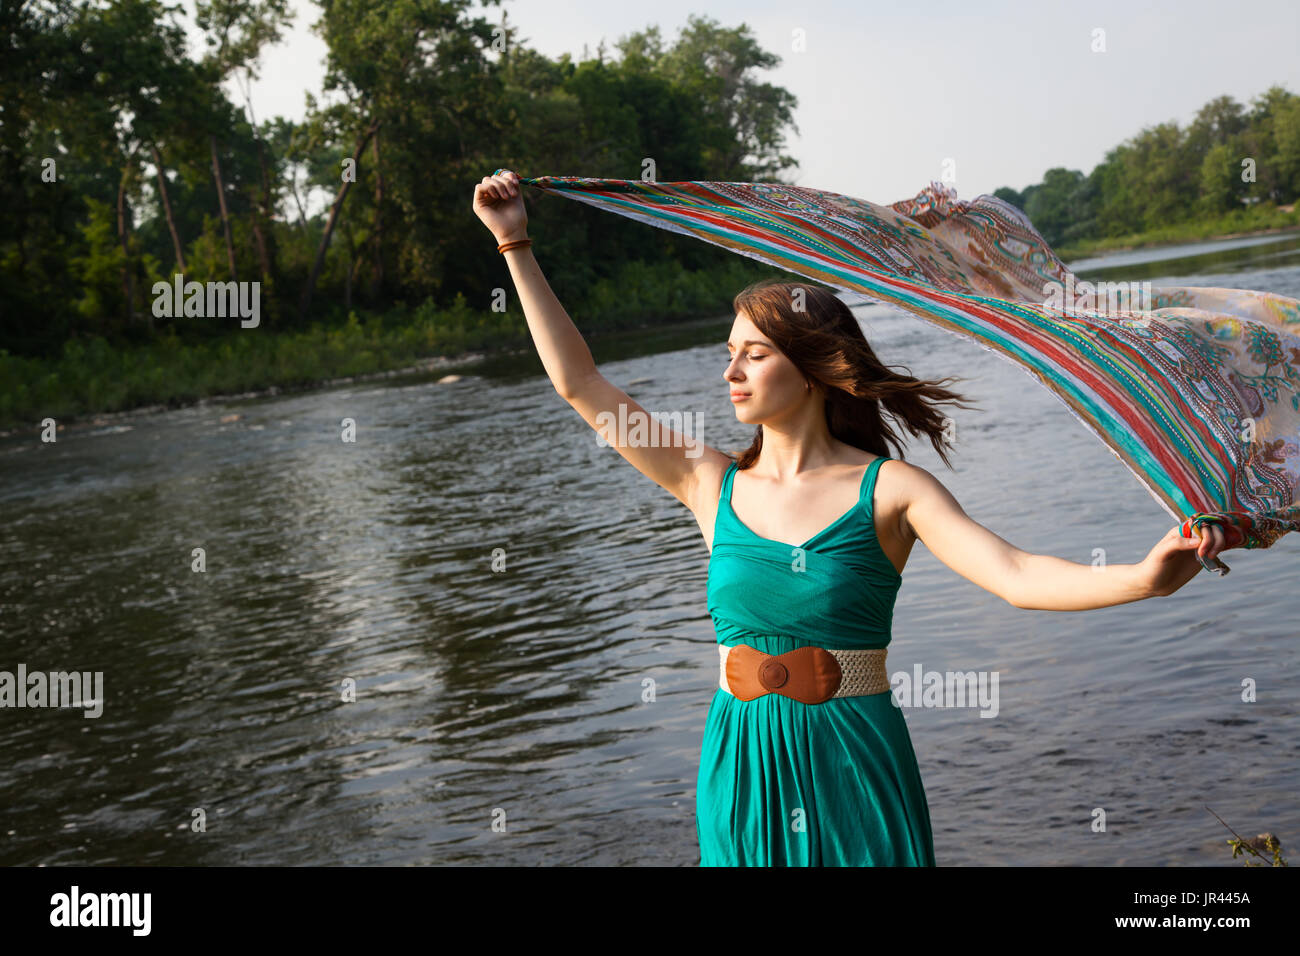 Junge Frau mit einem Kleid Petrol Grün steht in der Nähe von einem Fluss und See/Petrol bunten Schal in den Wind hält.   Sie ist entspannt und heiter, während das Gefühl th Stockfoto